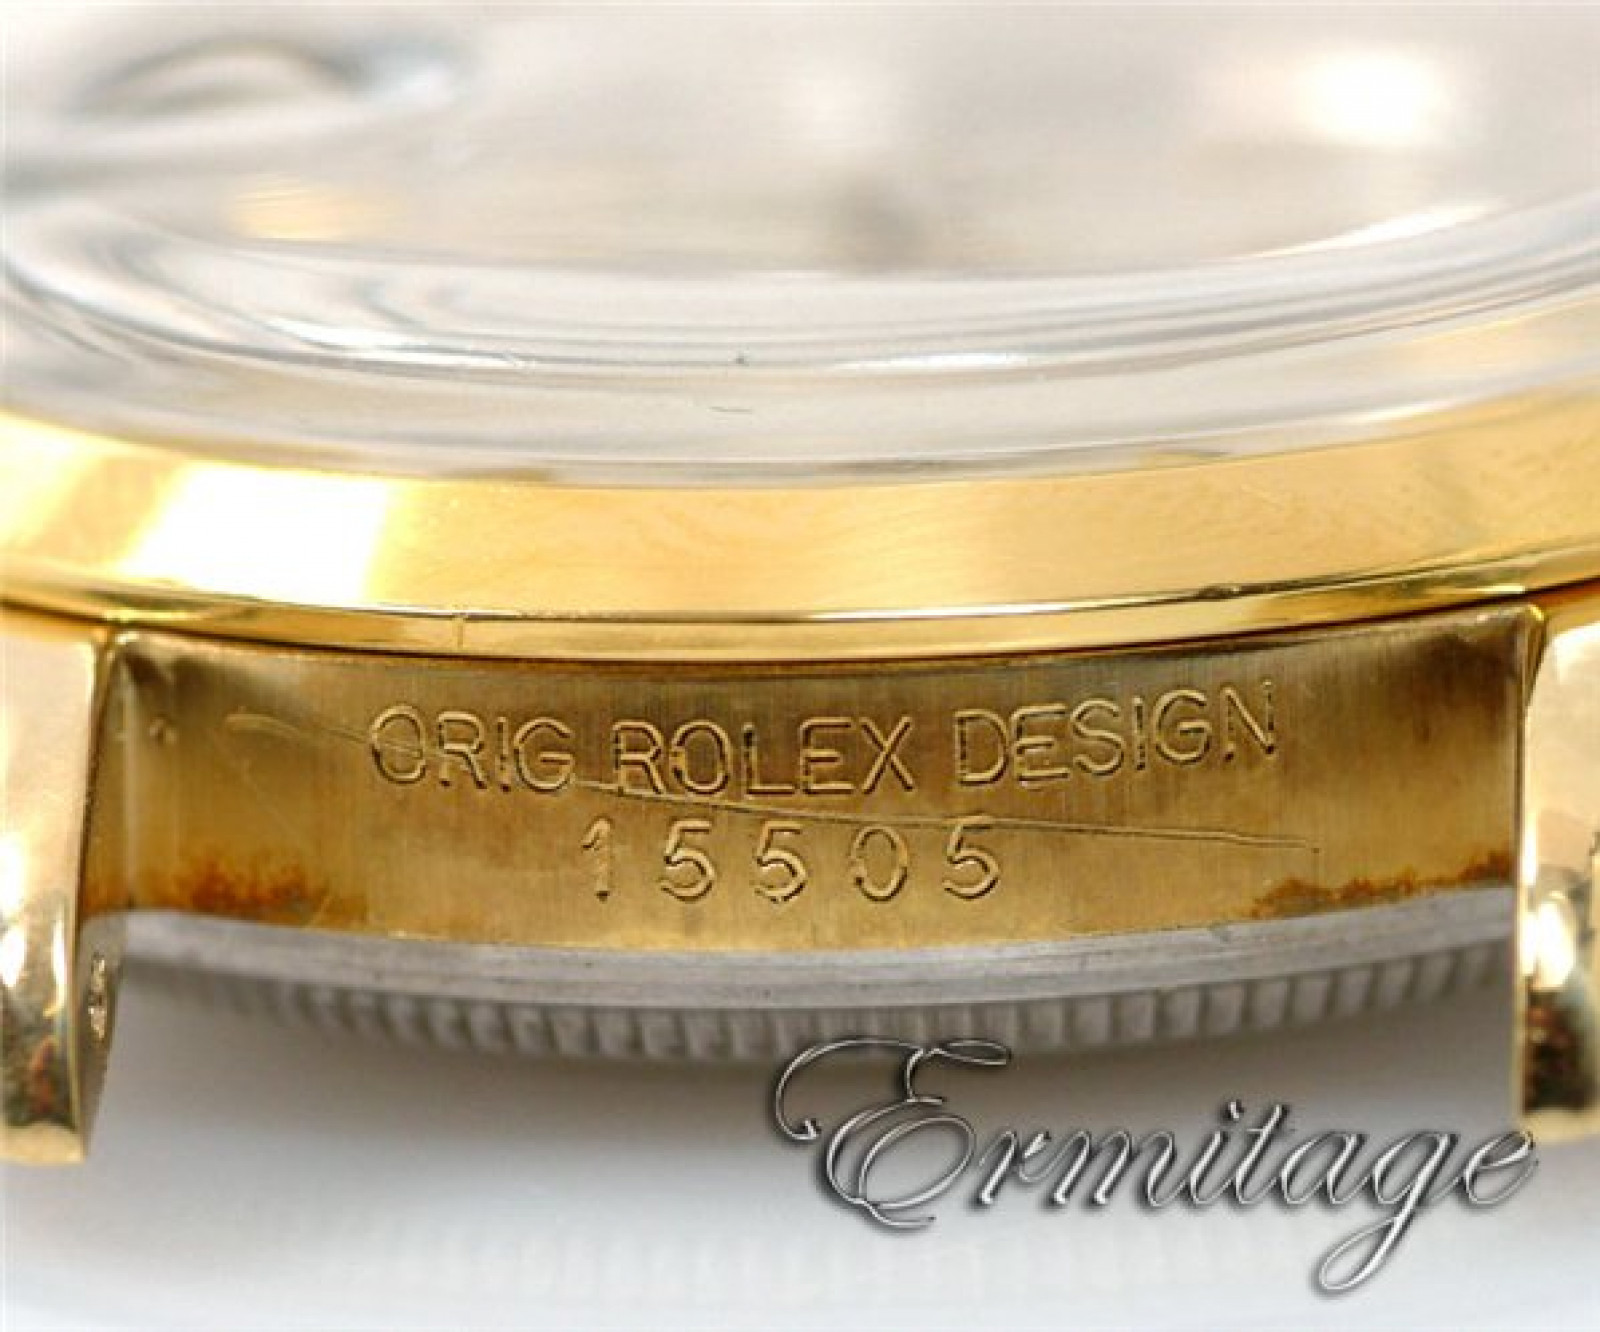 Rolex Date 15505 Gold Silver